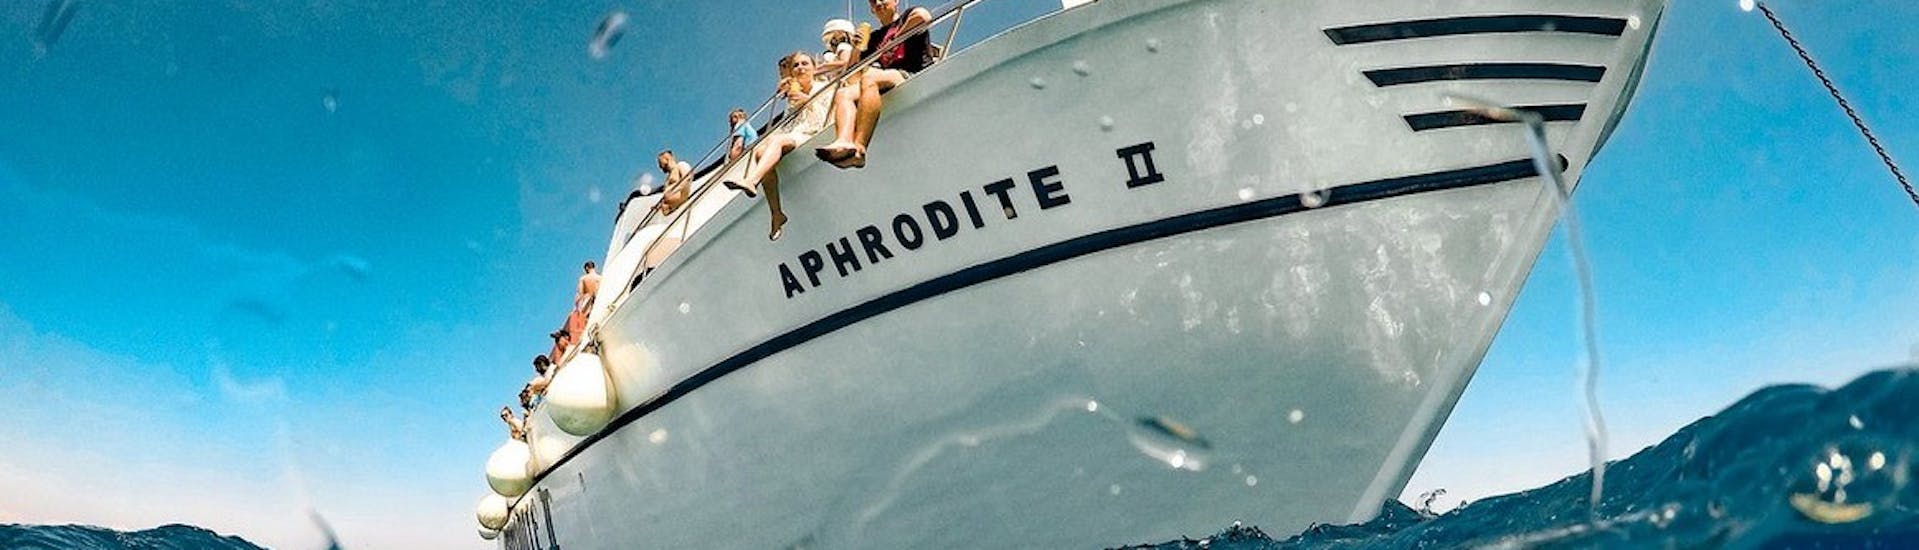 Gli ospiti che nuotano ammirano l'Afrodite 2 durante la Gita in barca da Ayia Napa a Capo Greco e alla Laguna Blu.